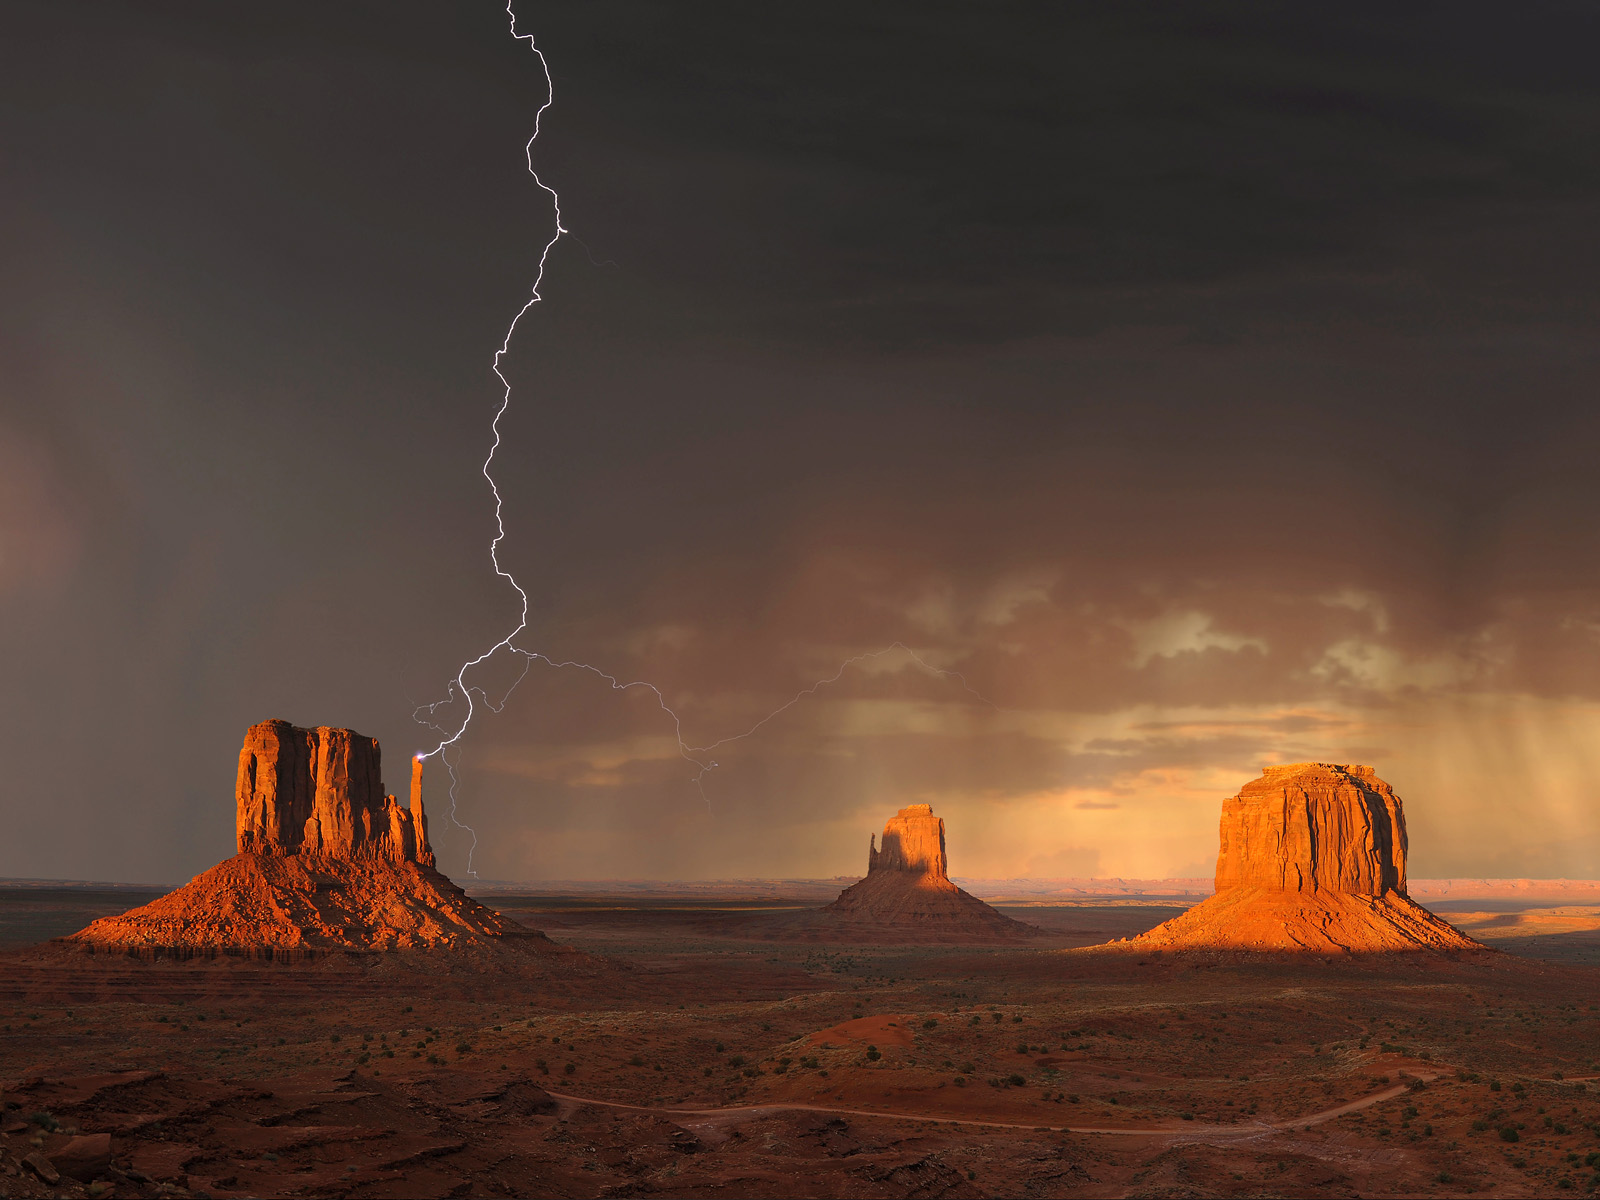 Thunderstorm Over Monument Valley Navajo Tribal Park Utah hqworld